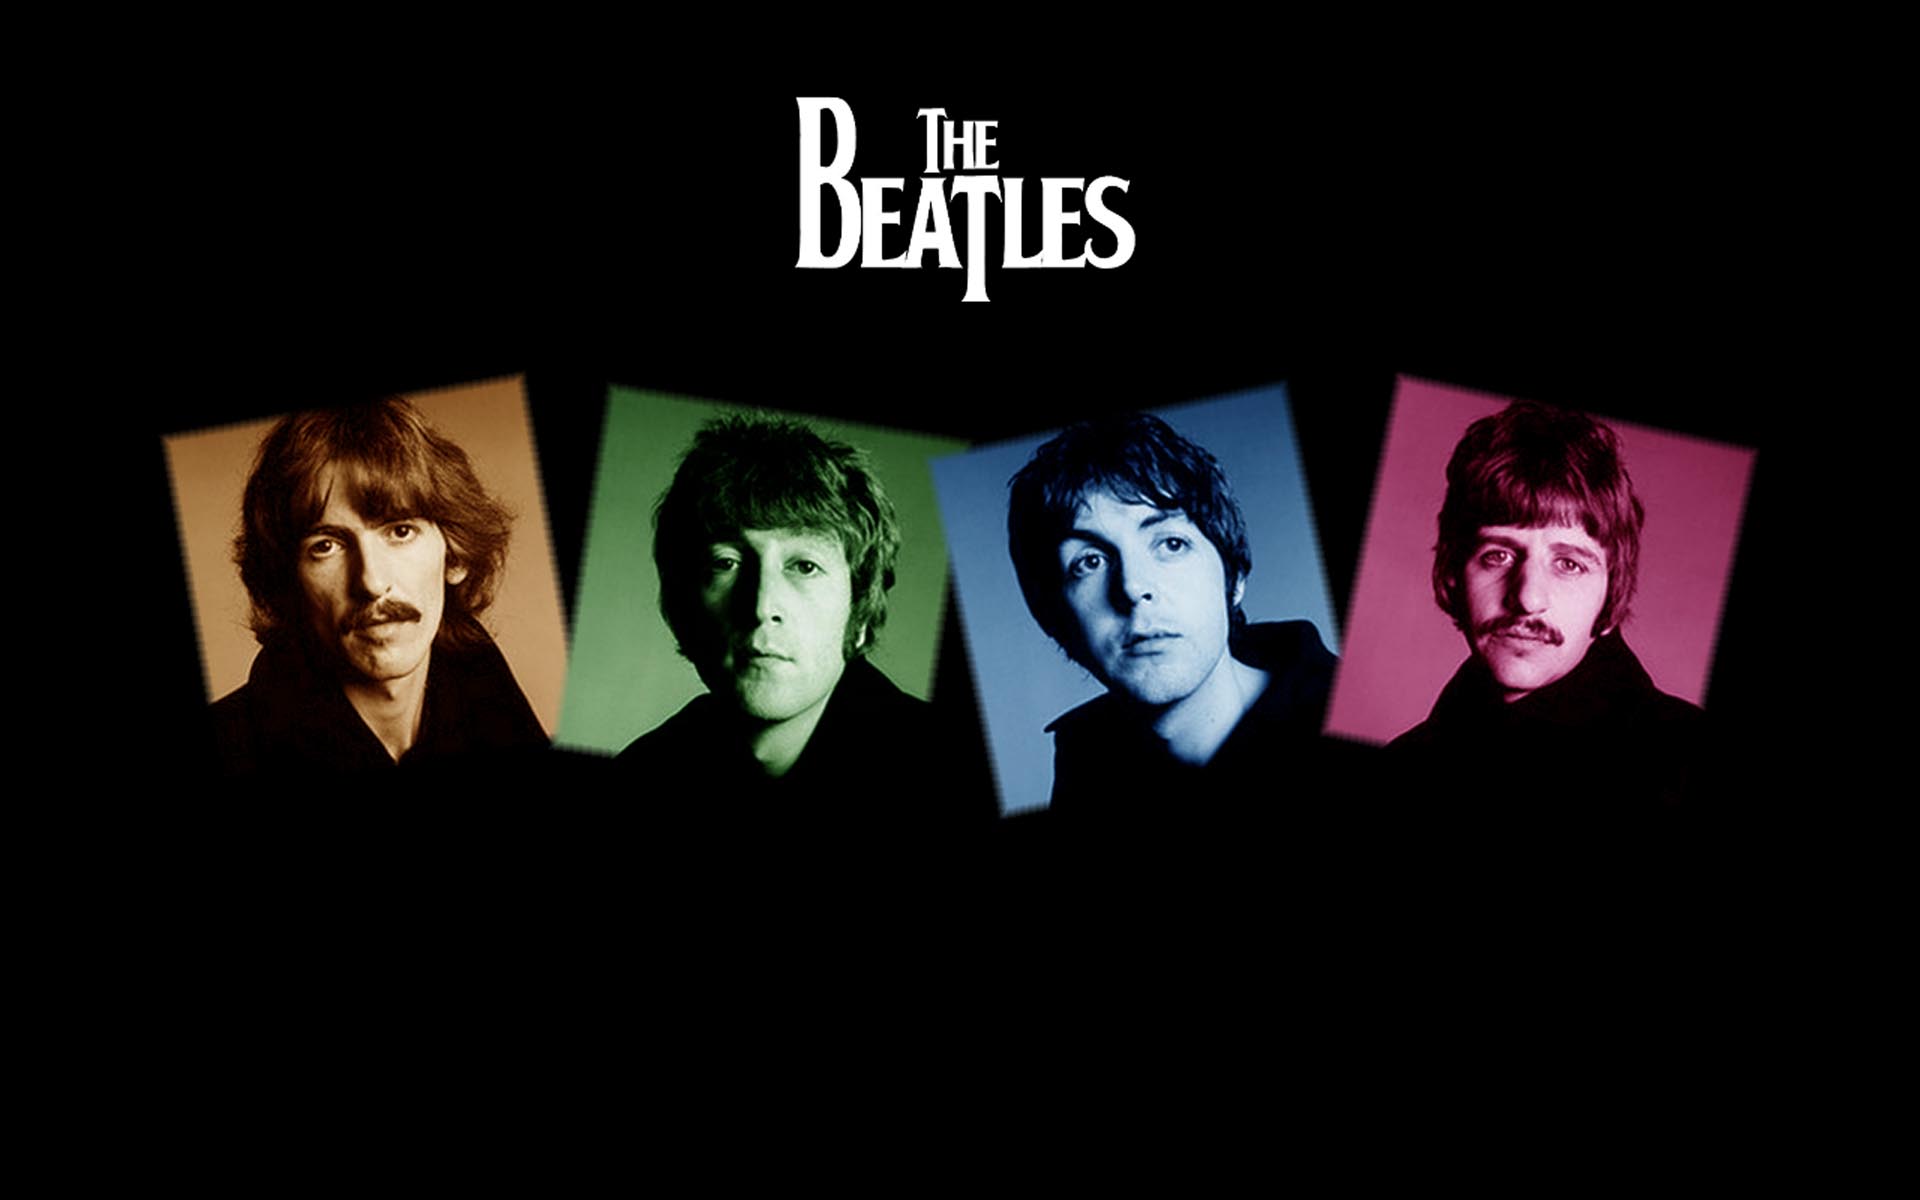  The Beatles desktop wallpaper The Beatles wallpapers 1920x1200